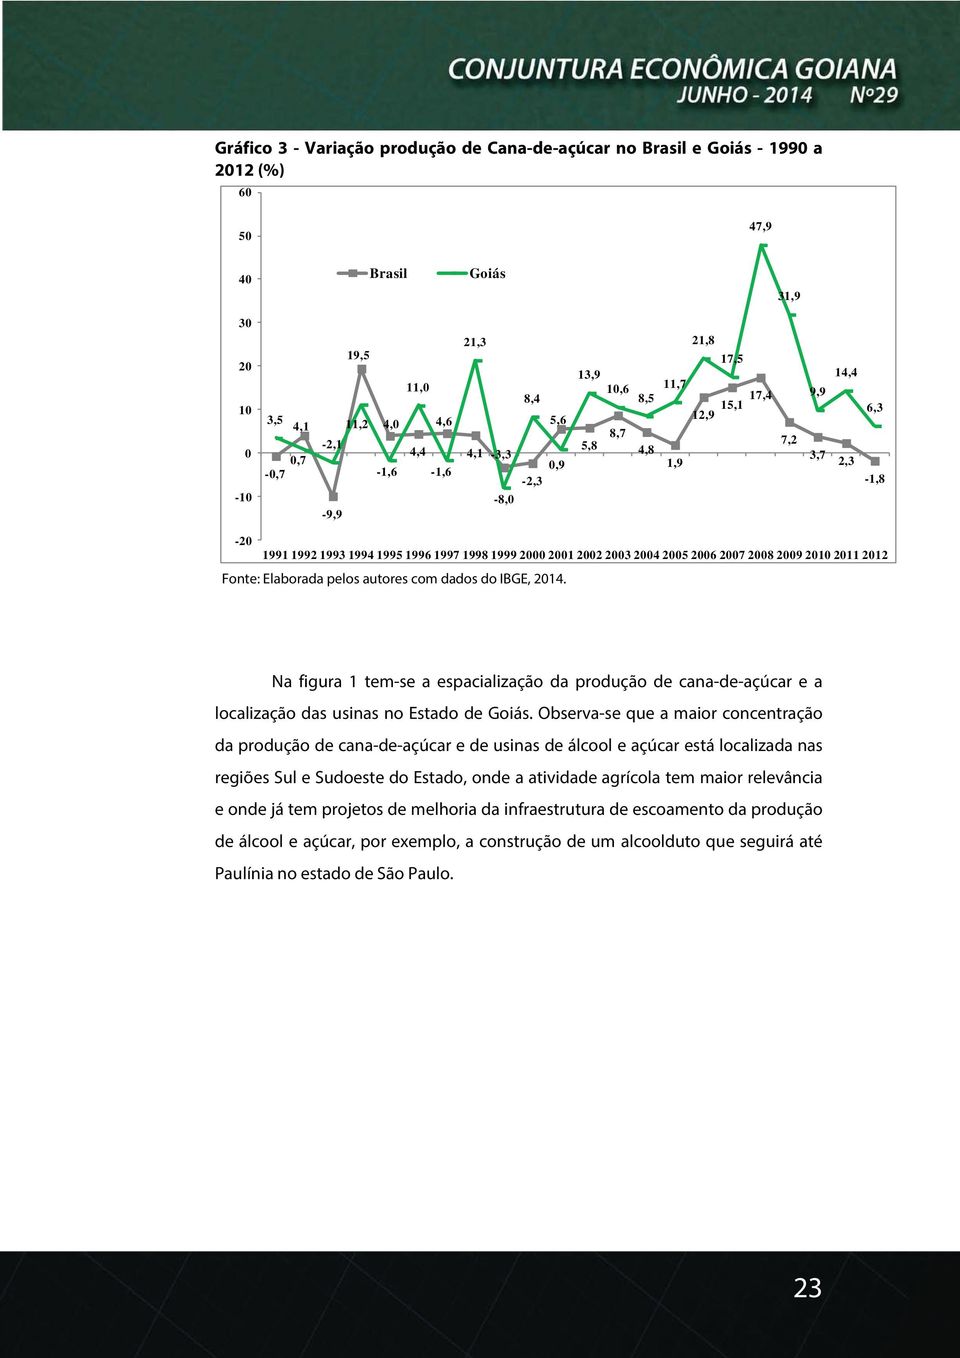 2007 2008 2009 2010 2011 2012 Fonte: Elaborada pelos autores com dados do IBGE, 2014. Na figura 1 tem-se a espacialização da produção de cana-de-açúcar e a localização das usinas no Estado de Goiás.